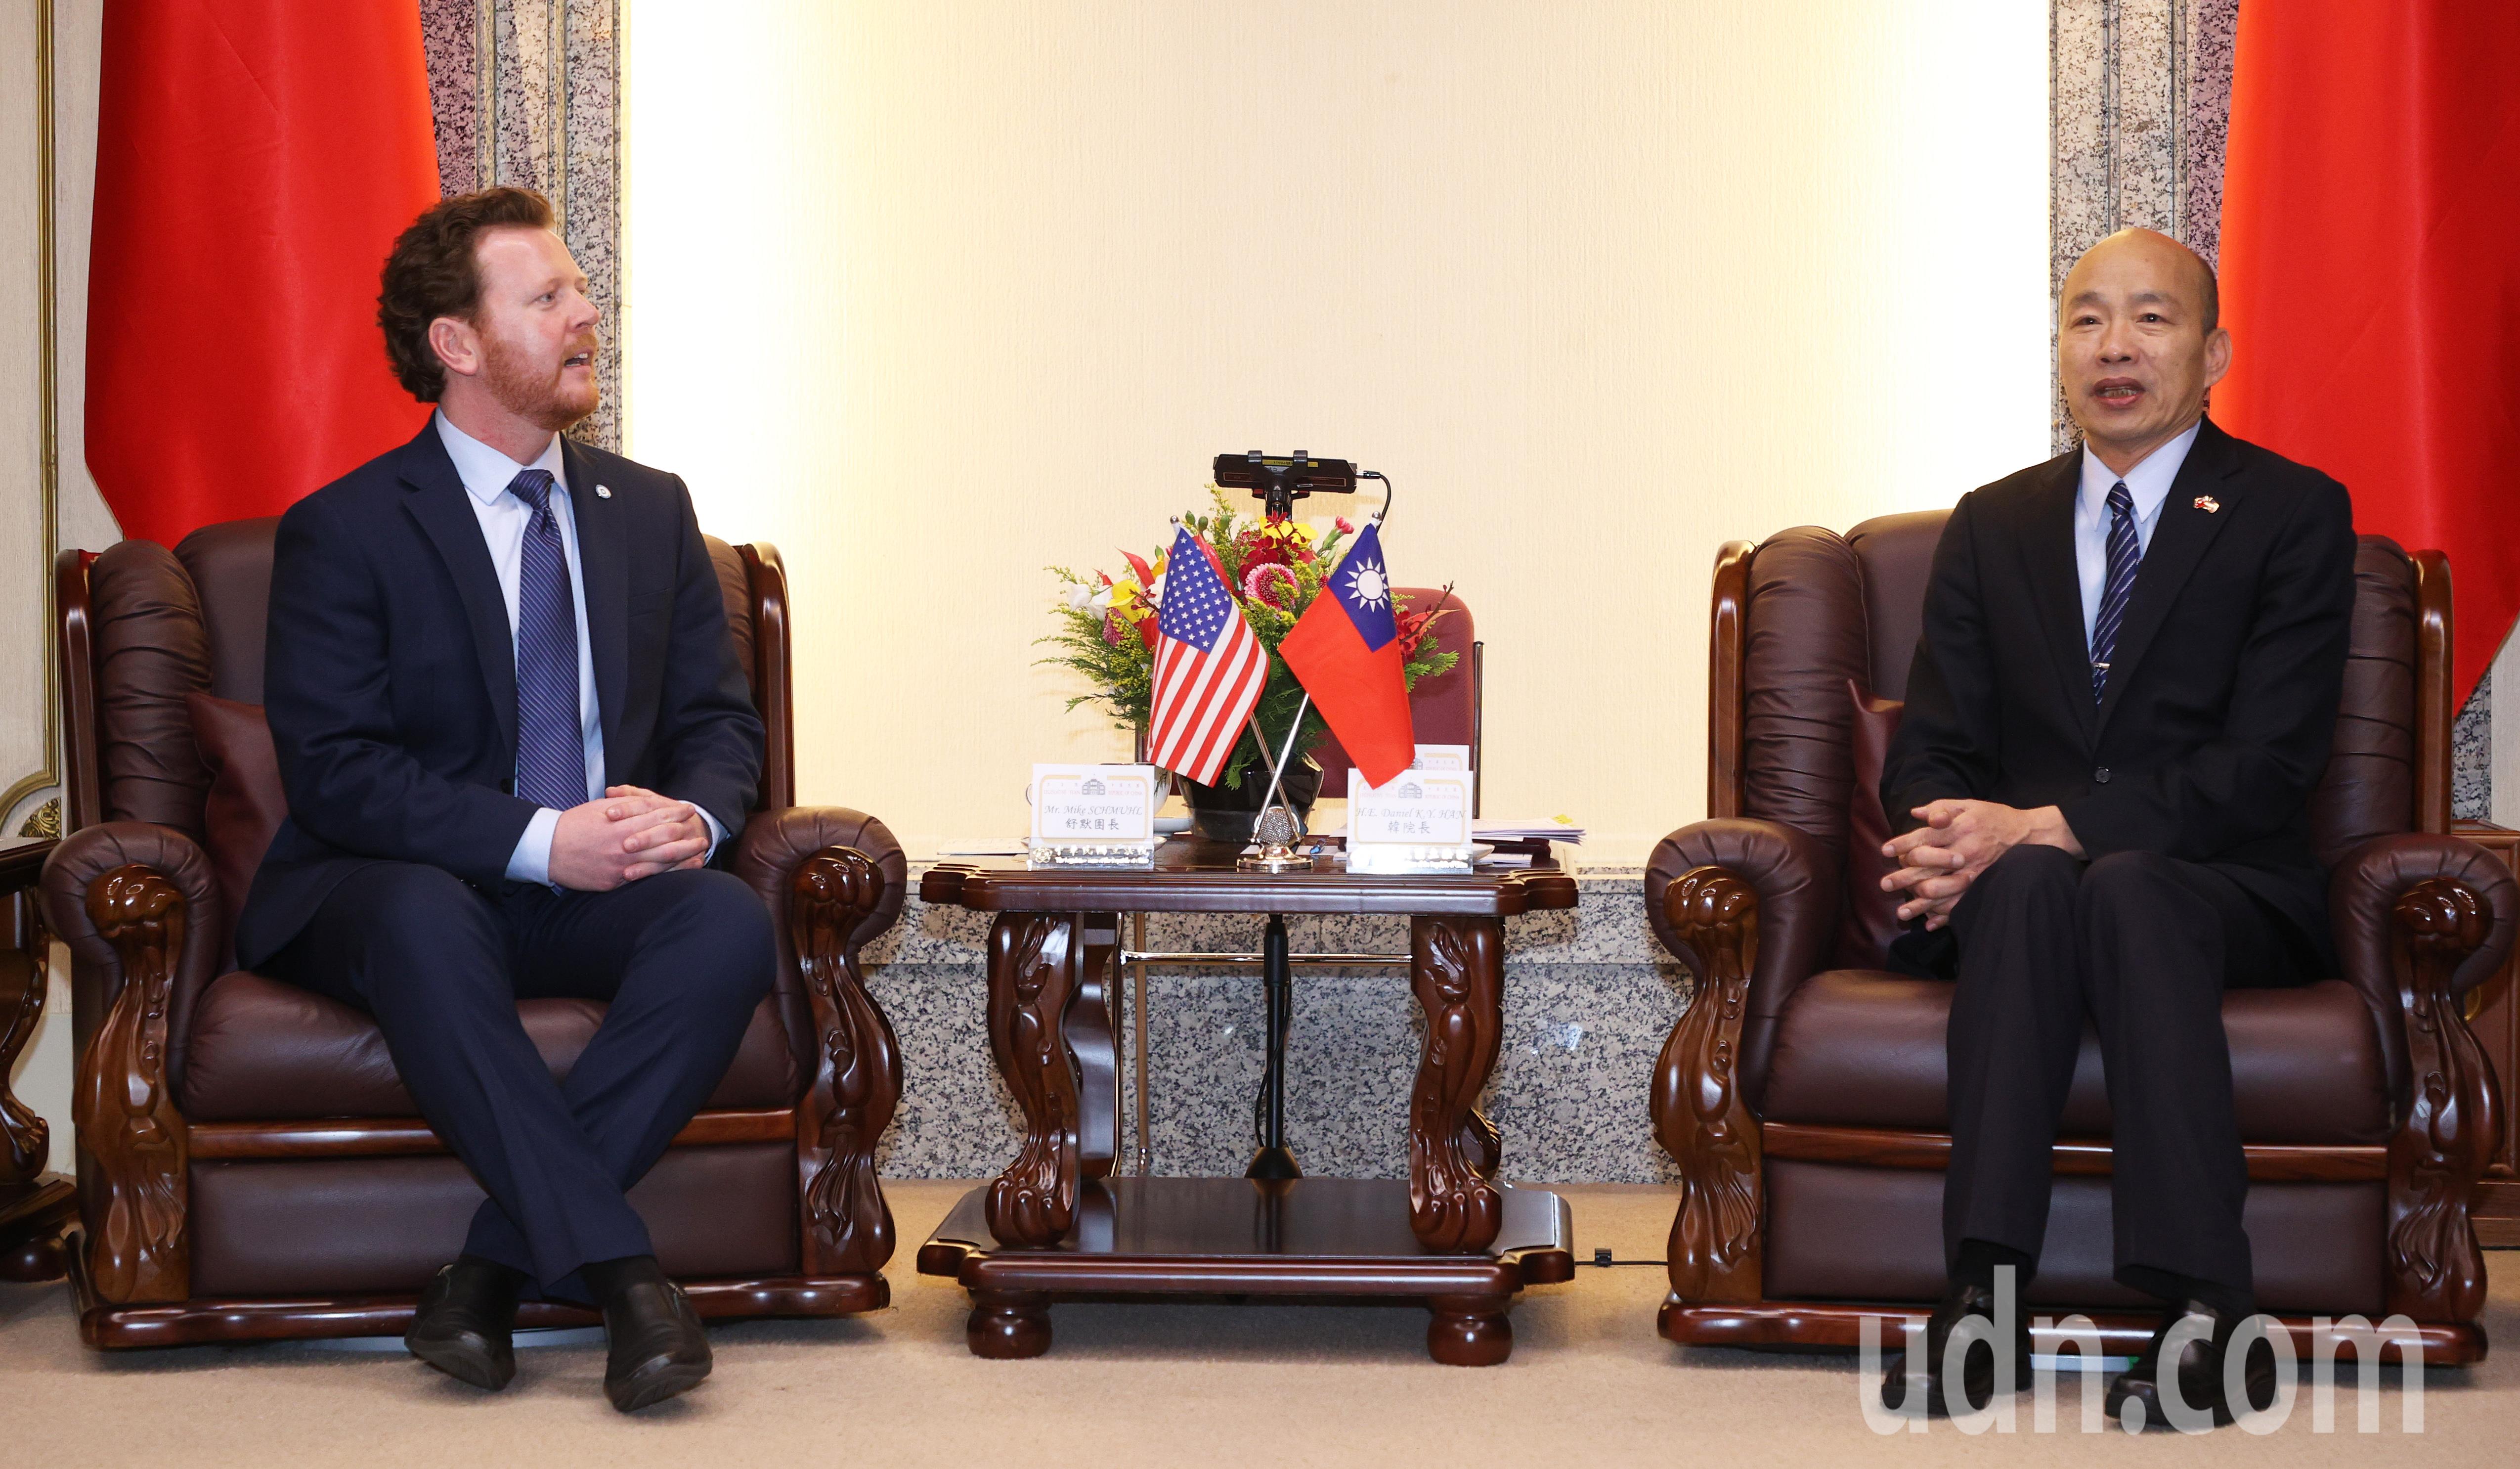 立法院长韩国瑜（右）今天接见美国「民主党州主席协会」(ASDC)访问团一行，感谢拜登政府对印太和平稳定及对台湾的重视与支持。记者潘俊宏／摄影